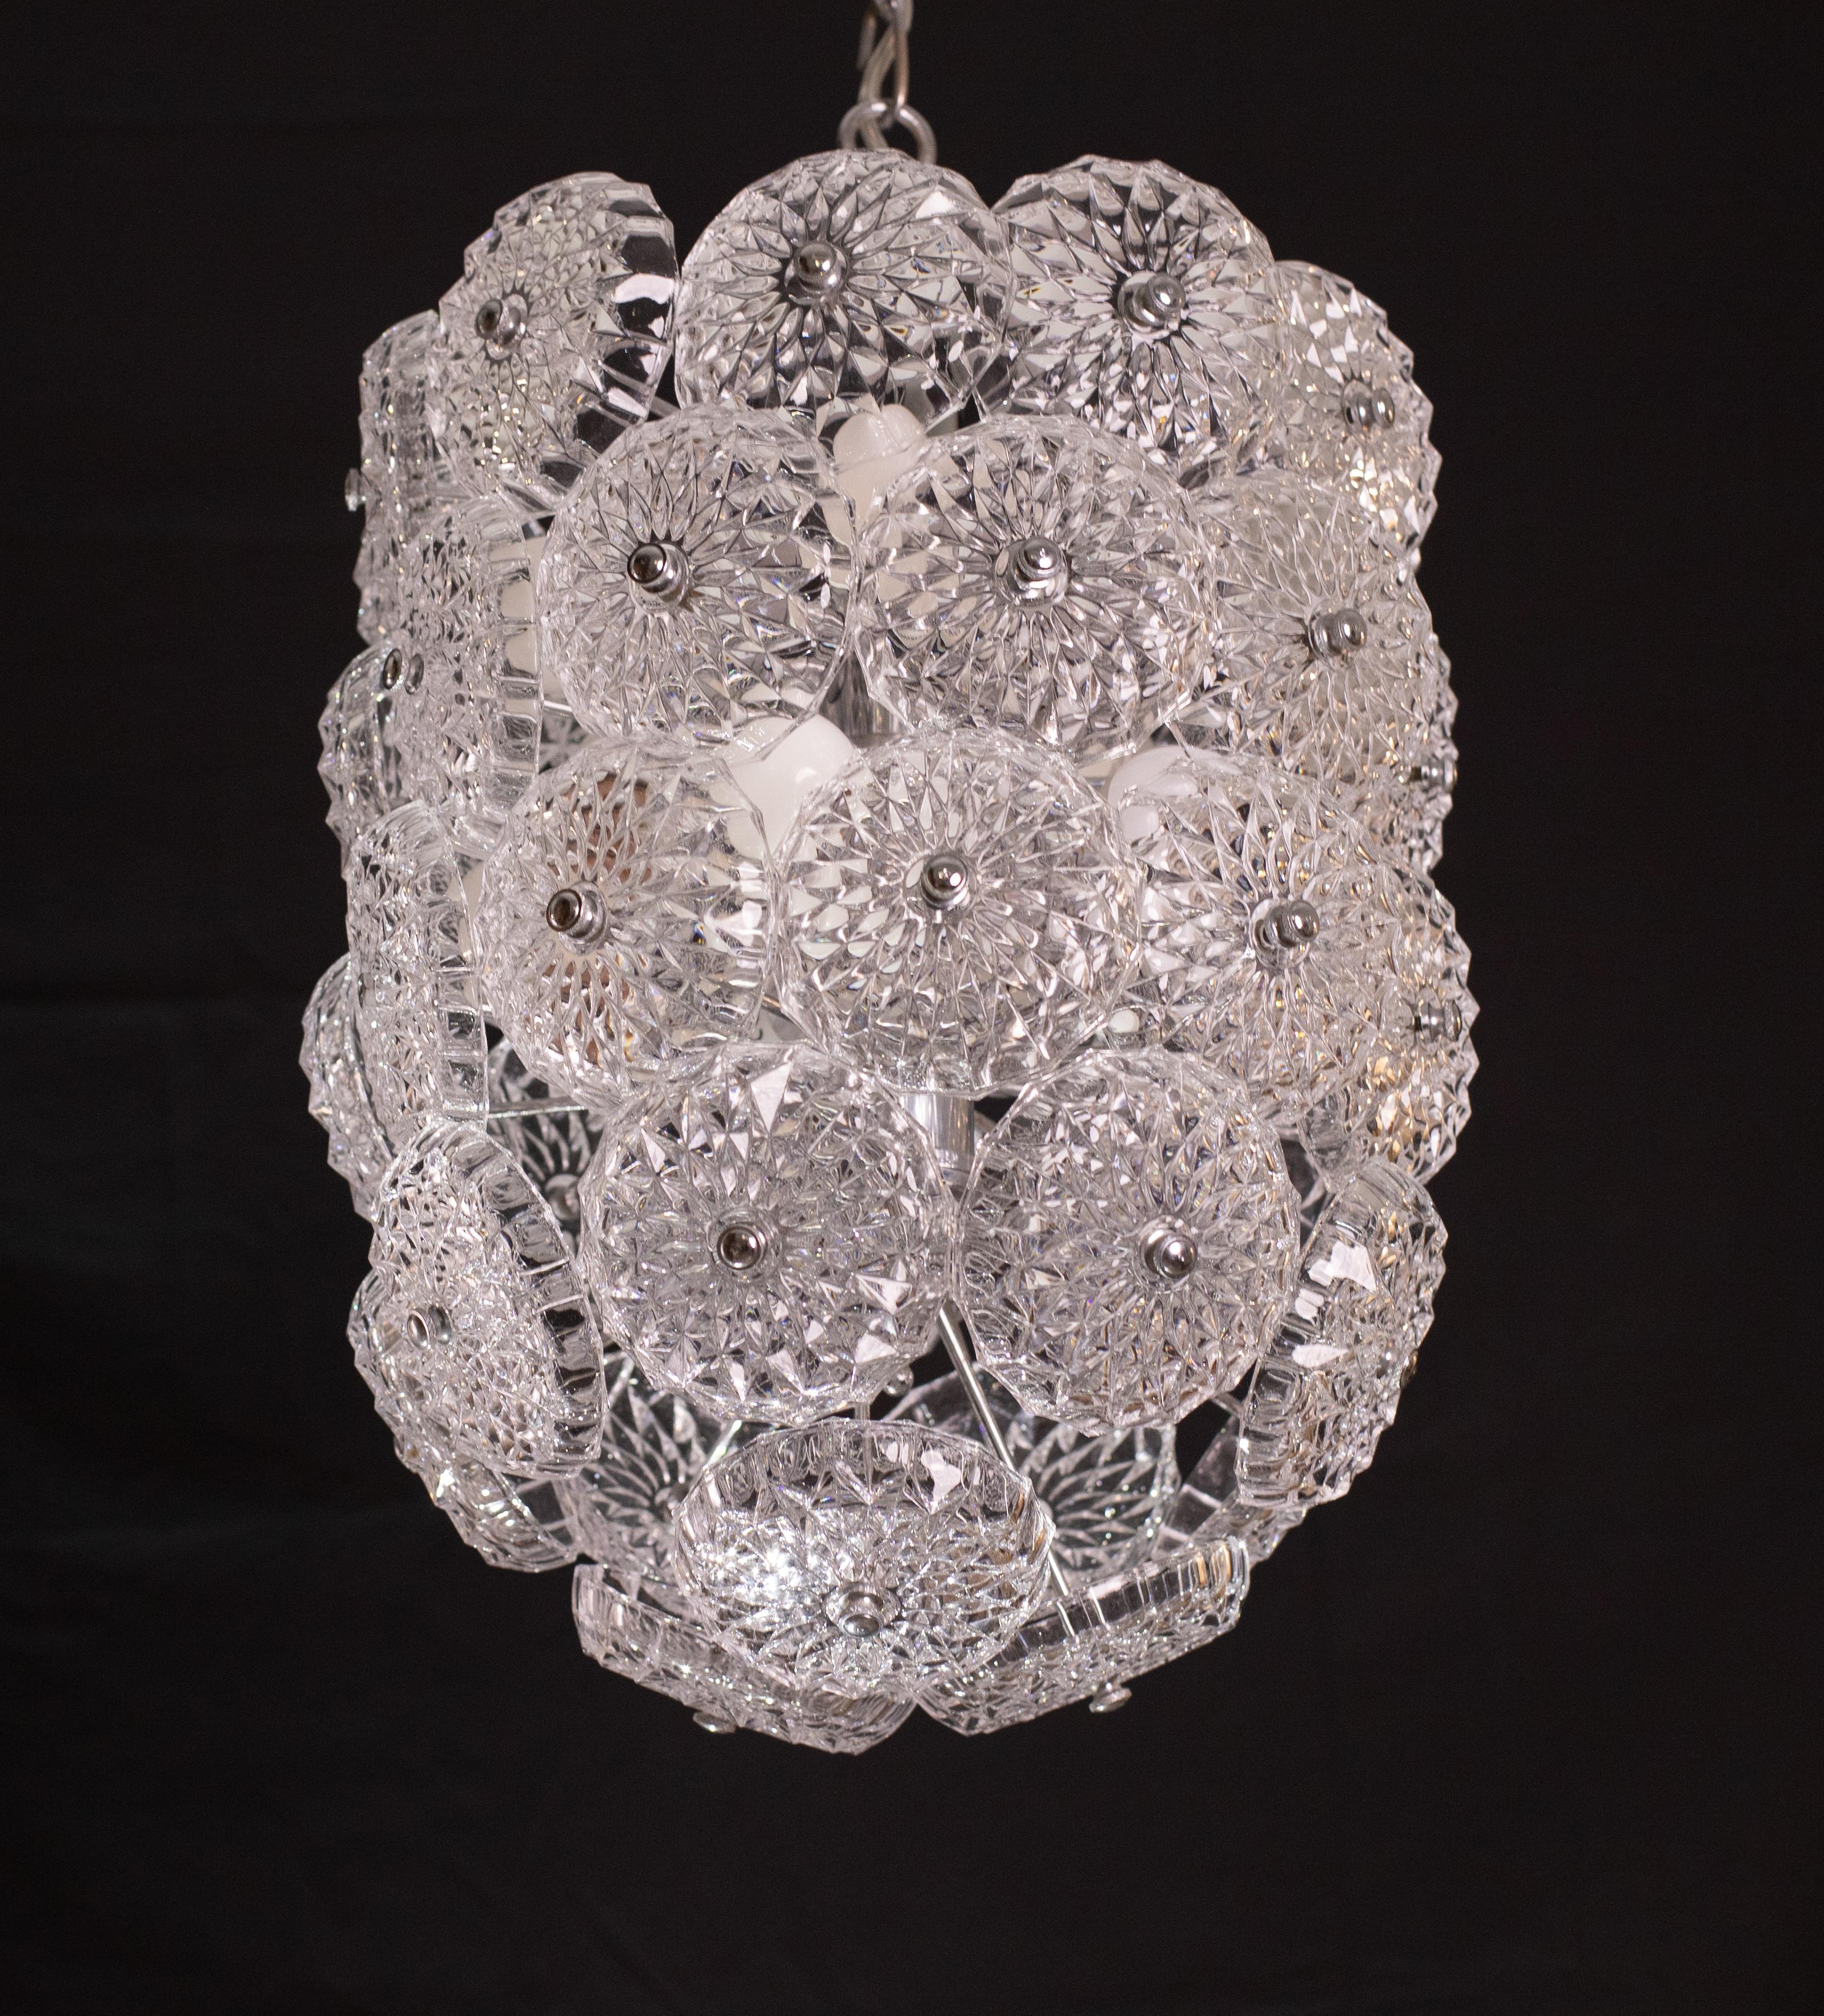 Floral Crystal Glass Sputnik Chandelier, 1970s For Sale 2